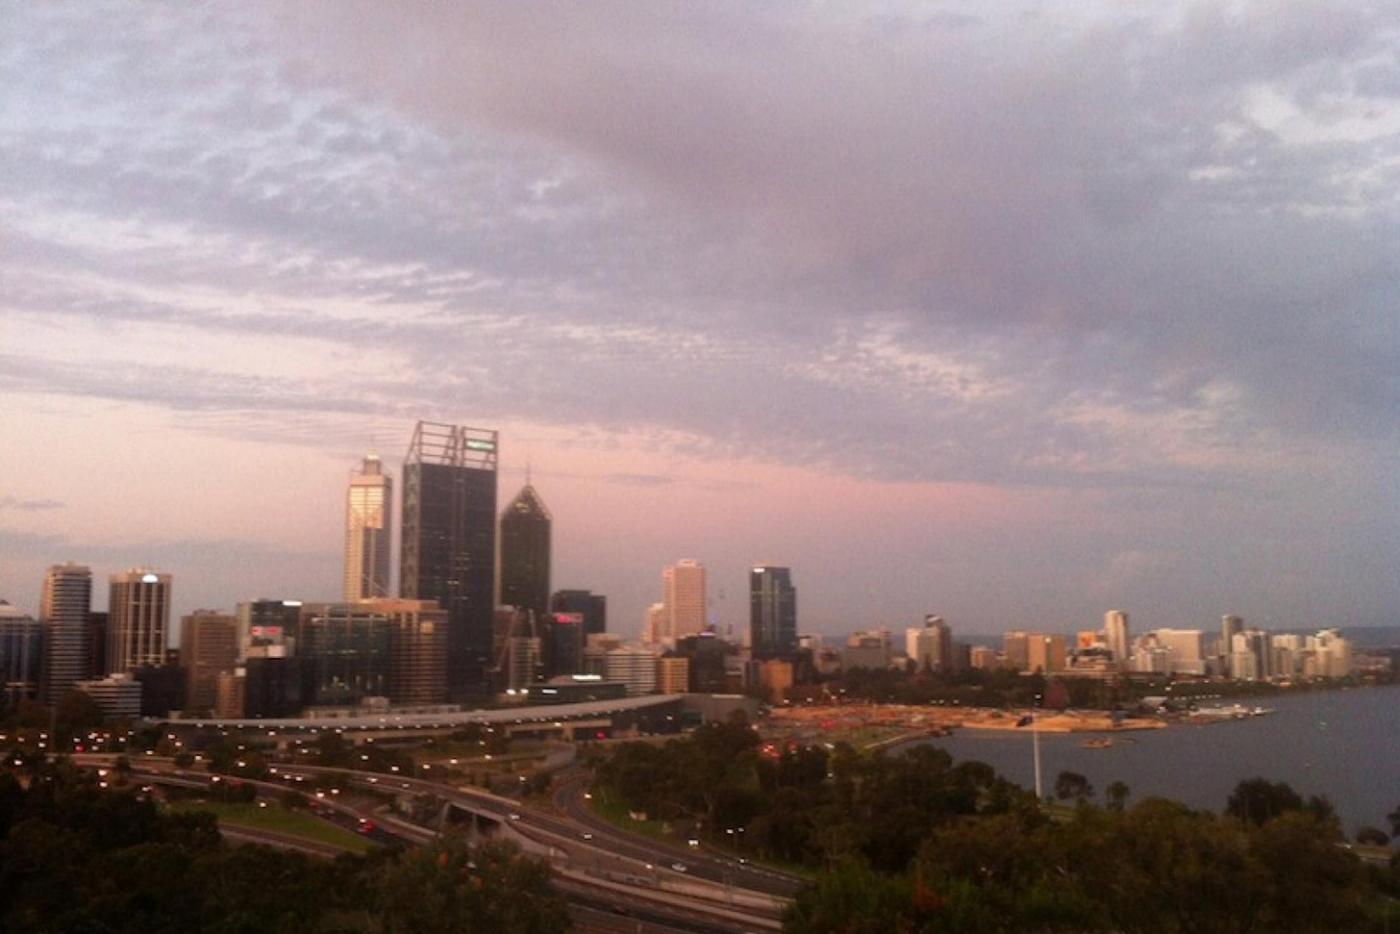 The sun sets over Perth, Australia.